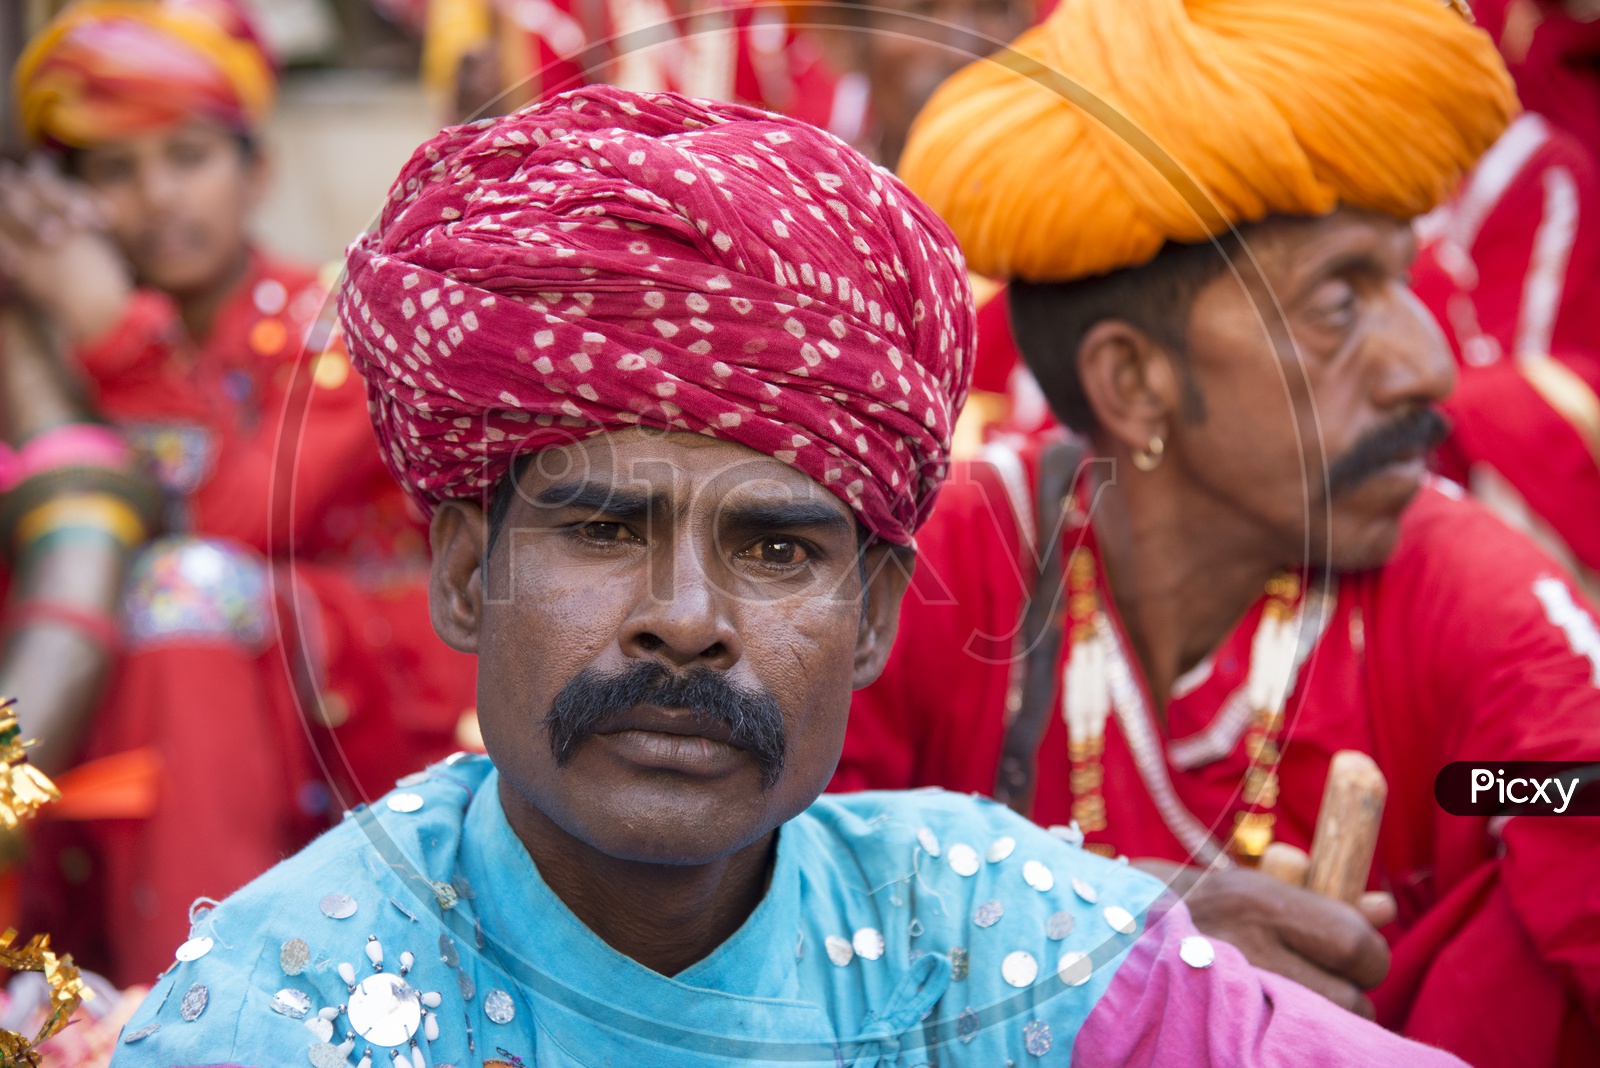 Rajasthani man in Traditional Turban at Mewar Gangaur Festival, Udaipur